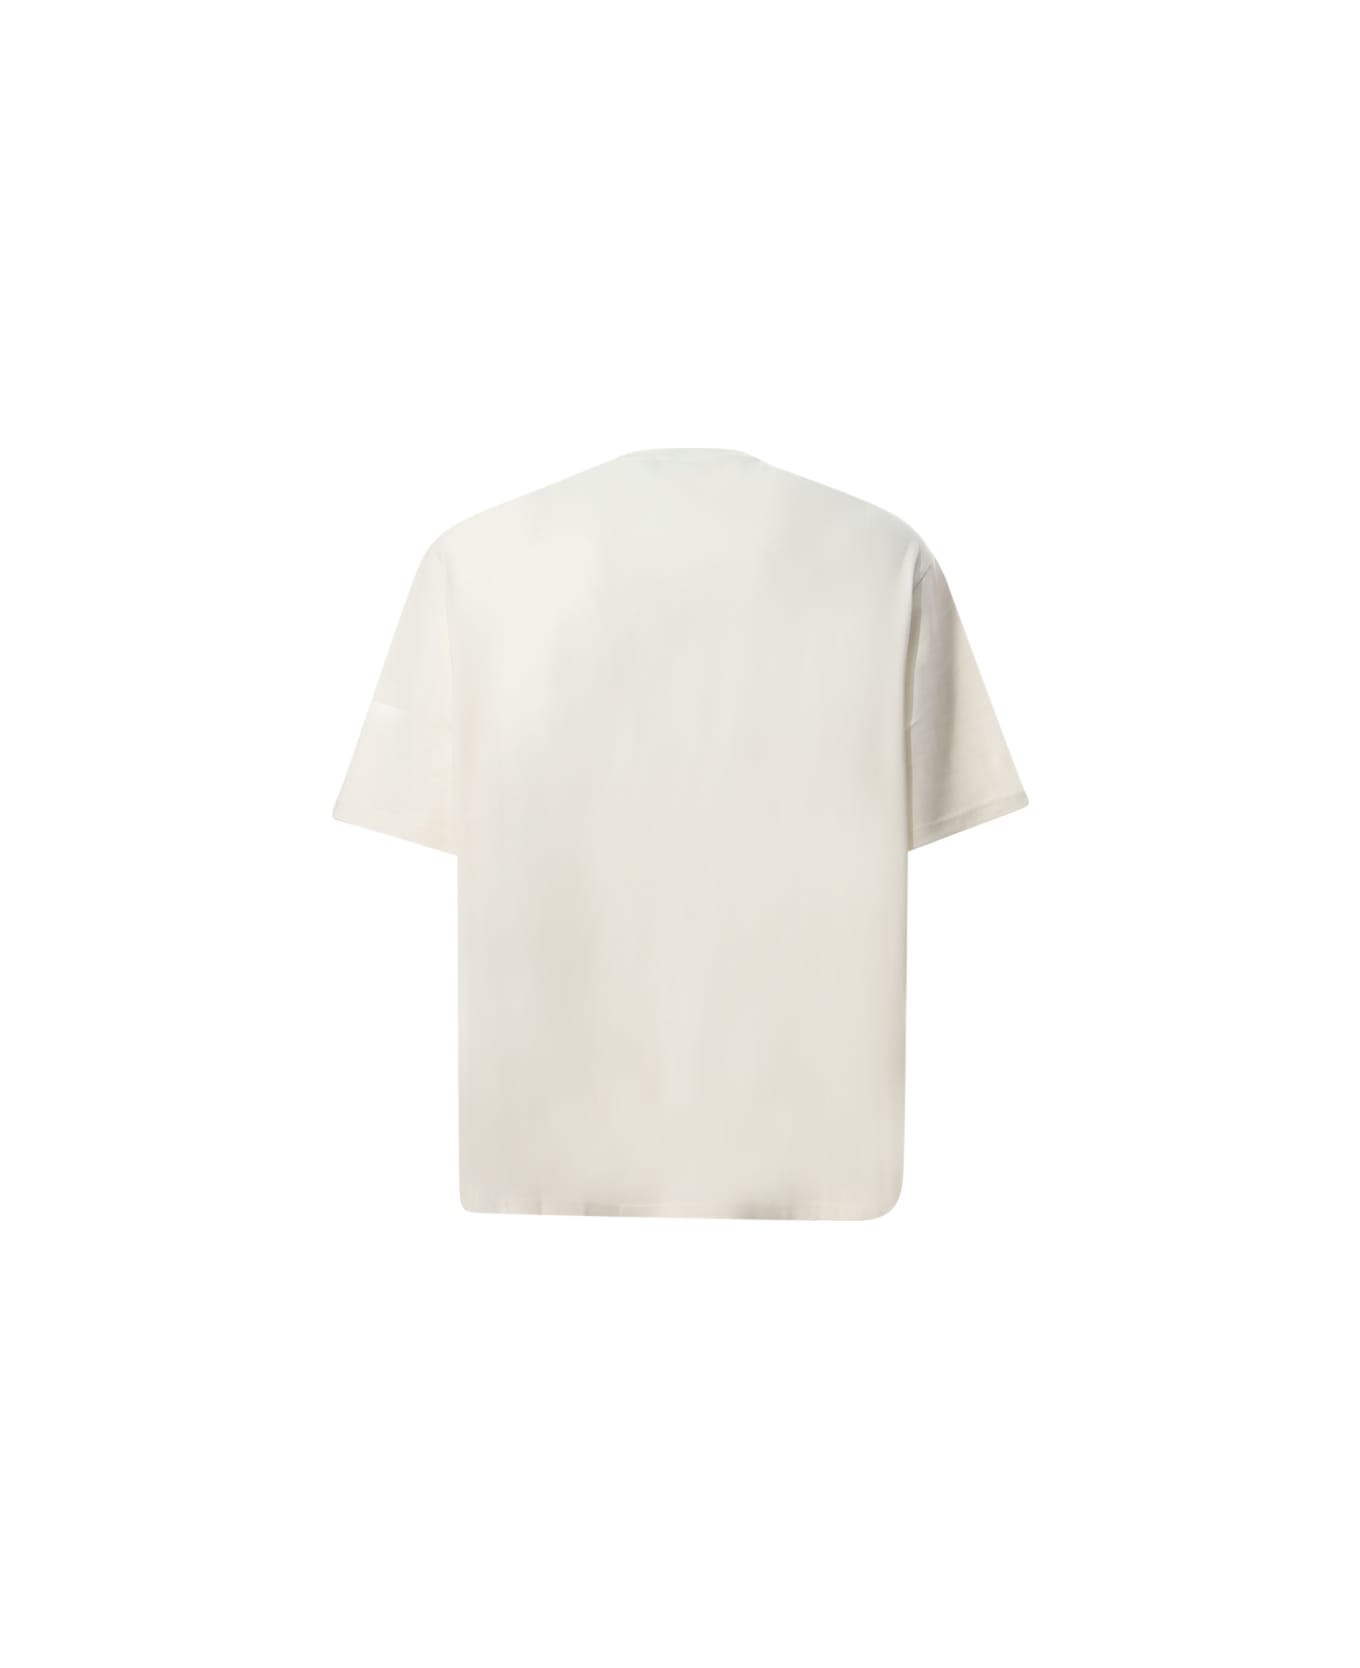 Emporio Armani T-shirt Emporio Armani - White シャツ